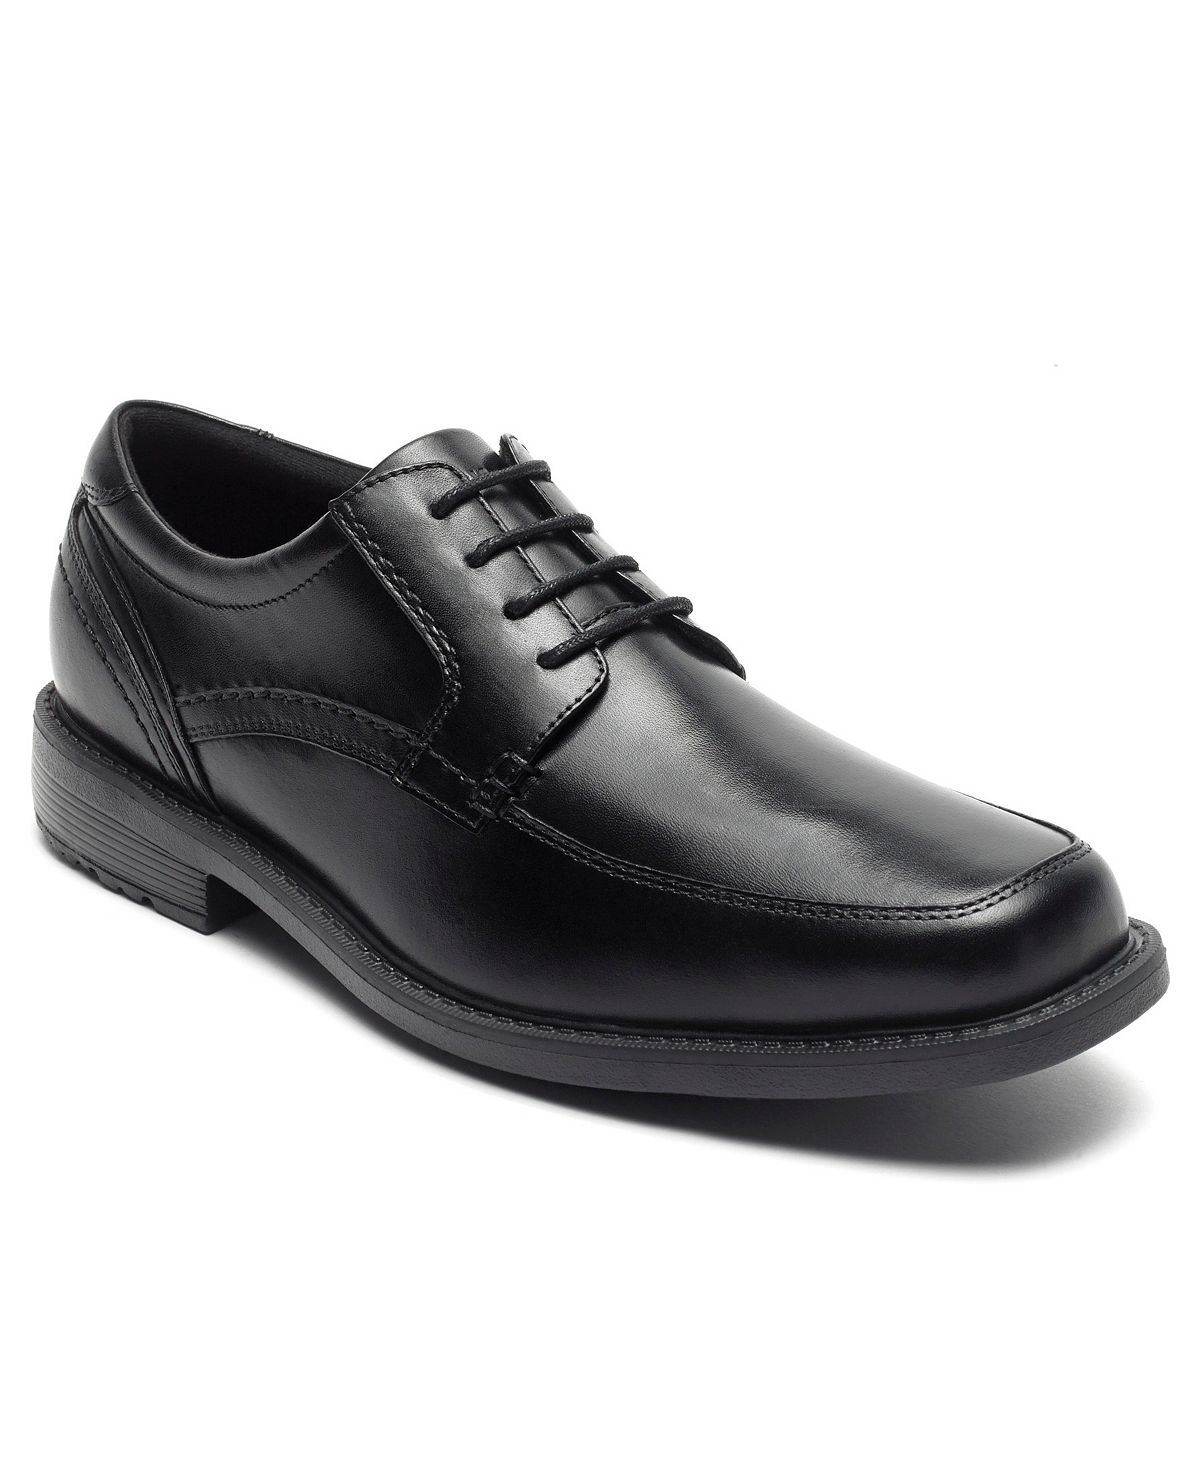 Мужская обувь style leader 2 с передним носком Rockport, черный аллен джеффри легкий способ пройти собеседование при приеме на работу все вопросы и ответы